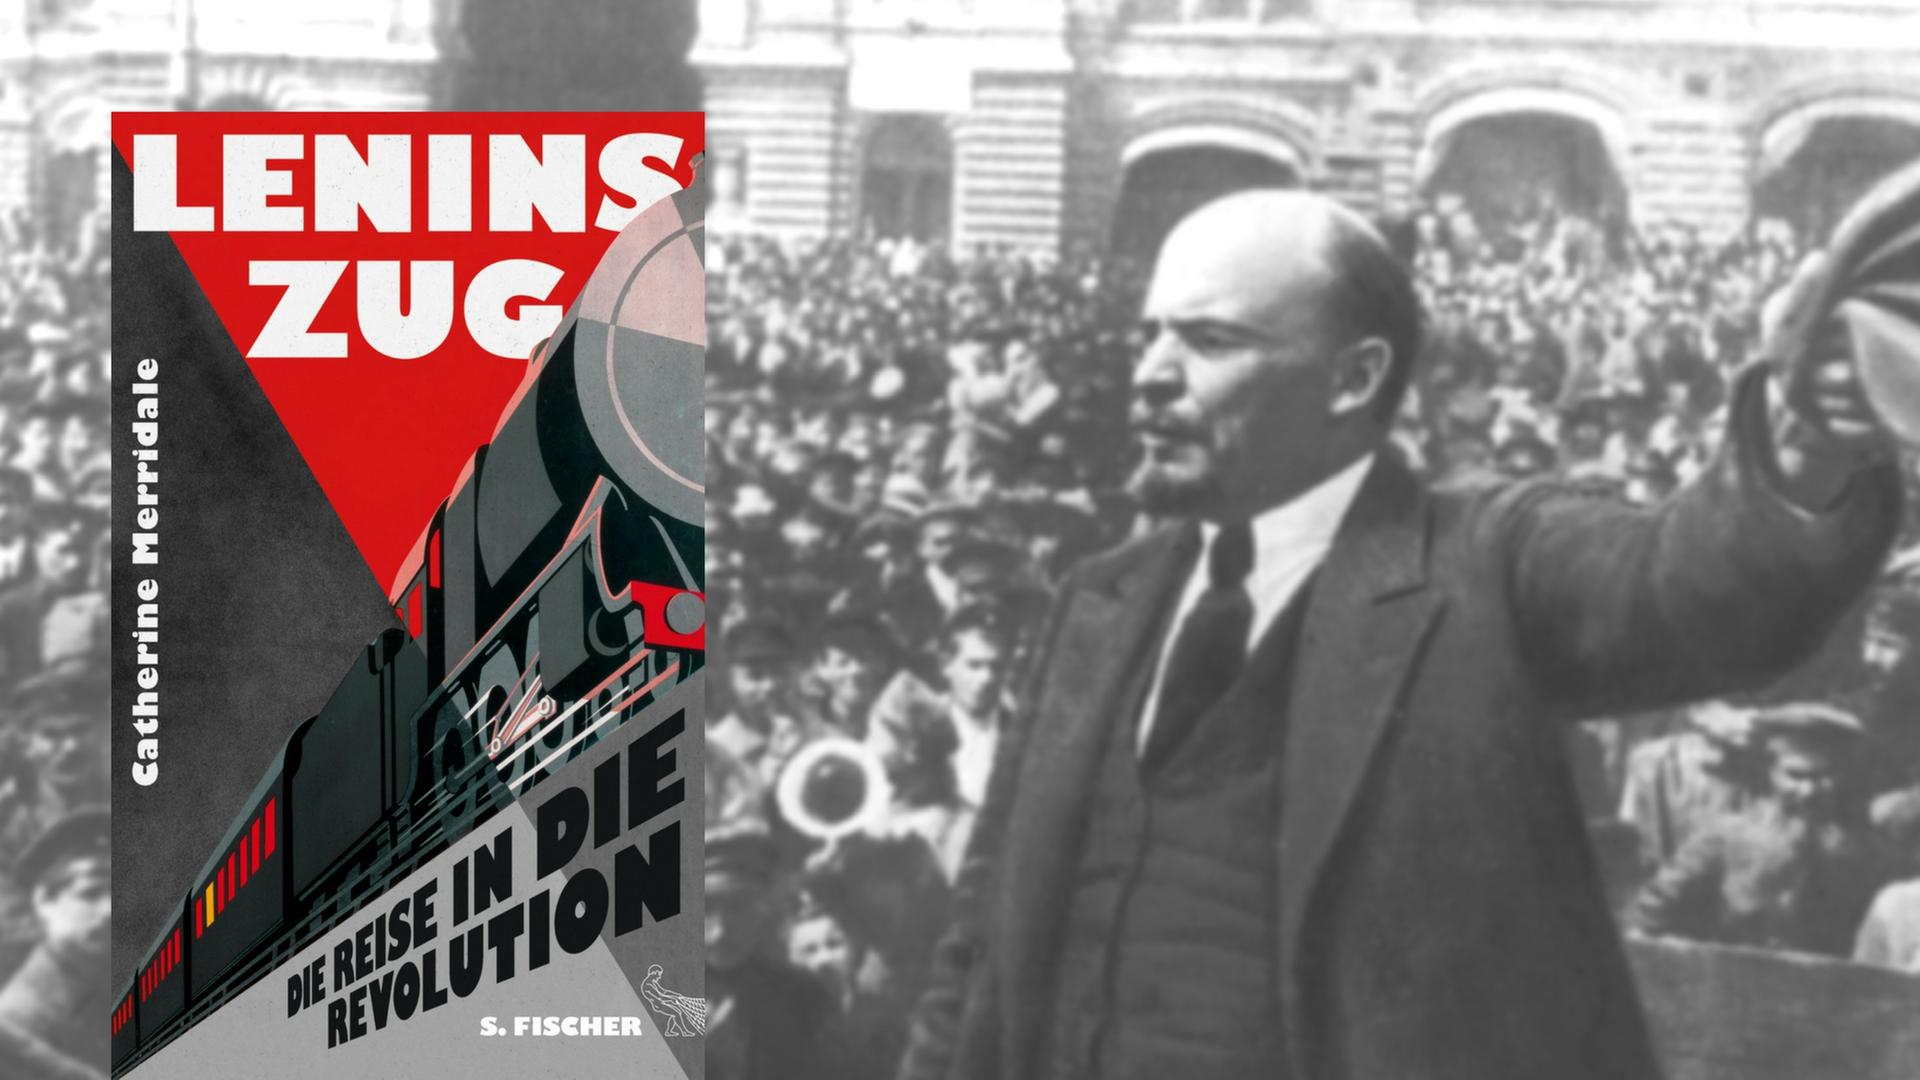 Buchcover "Lenins Zug" von Catherine Merridale, im Hintergrund Lenin bei einer Rede im Oktober 1917 in Moskau